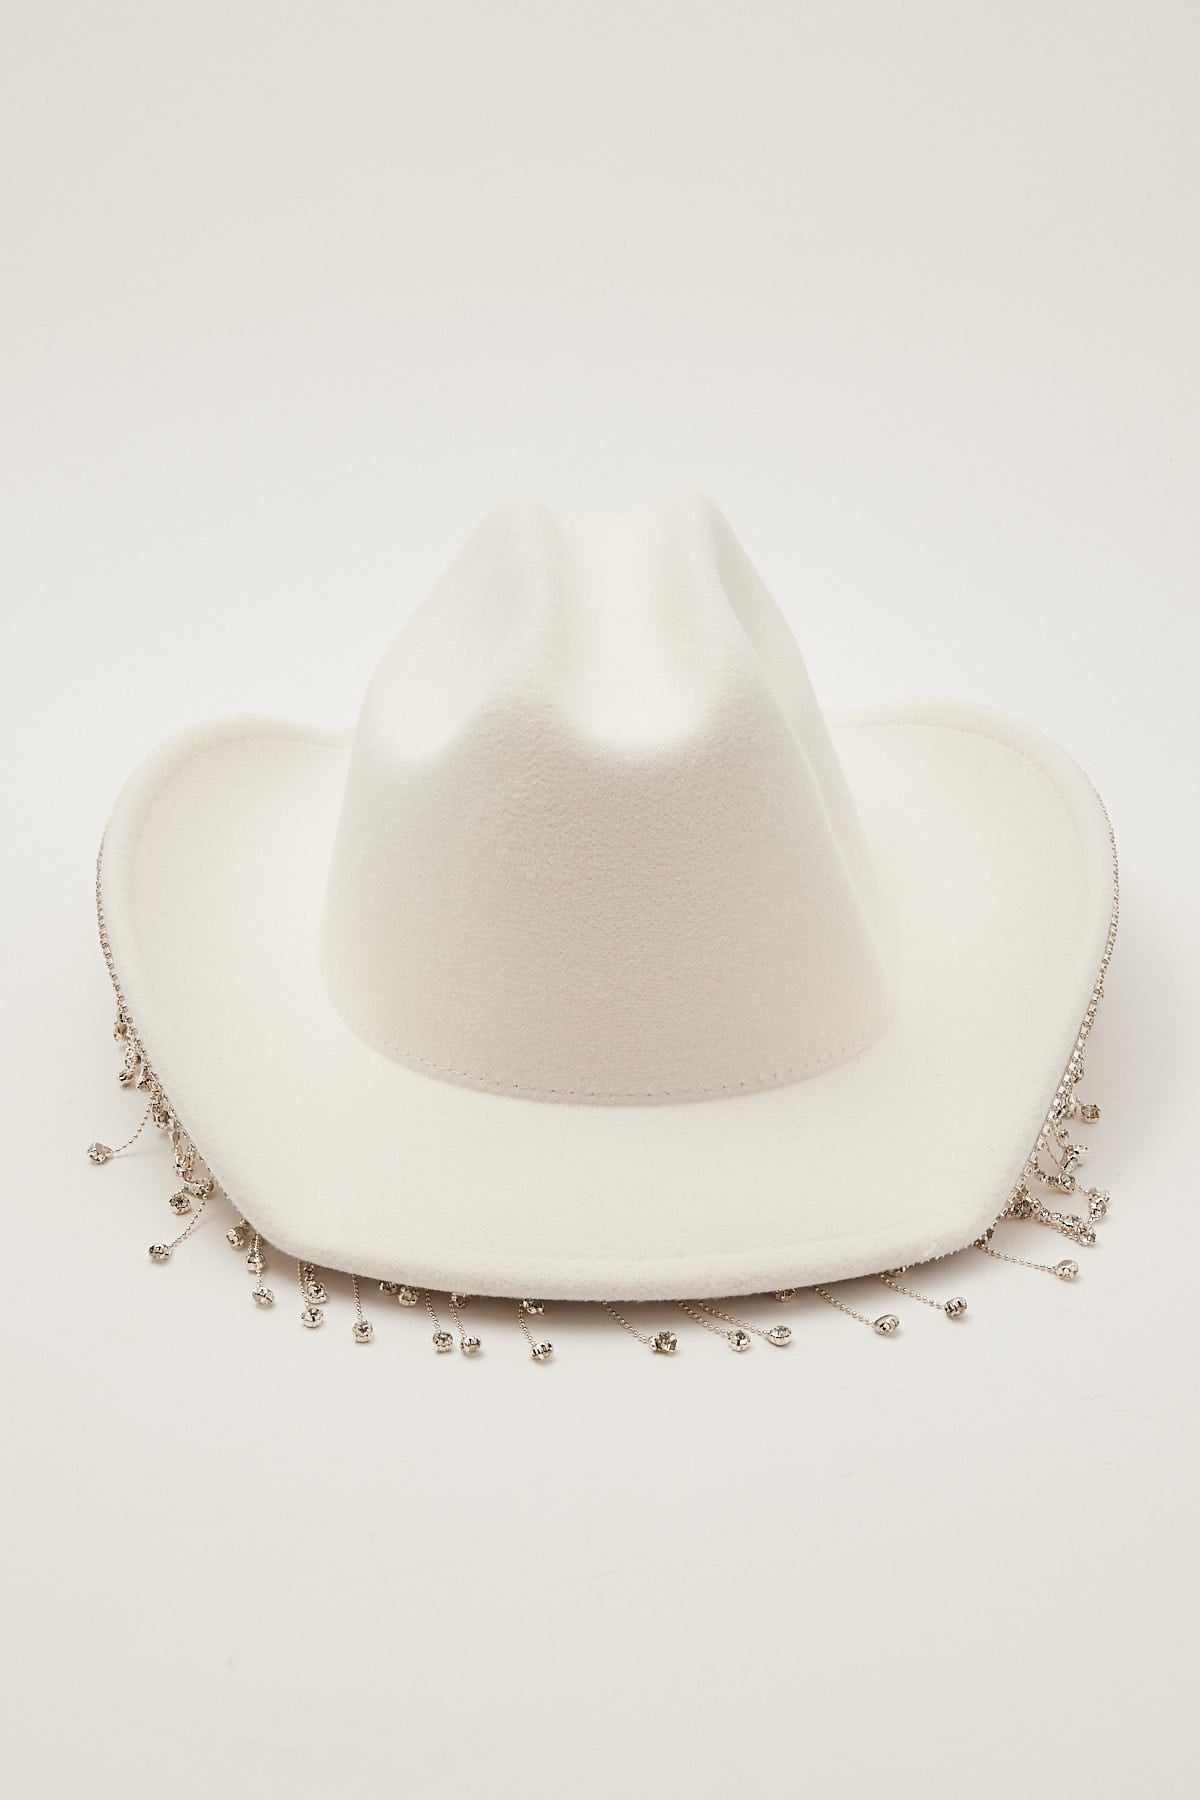 Token Wild West Rhinestone Cowboy Hat White